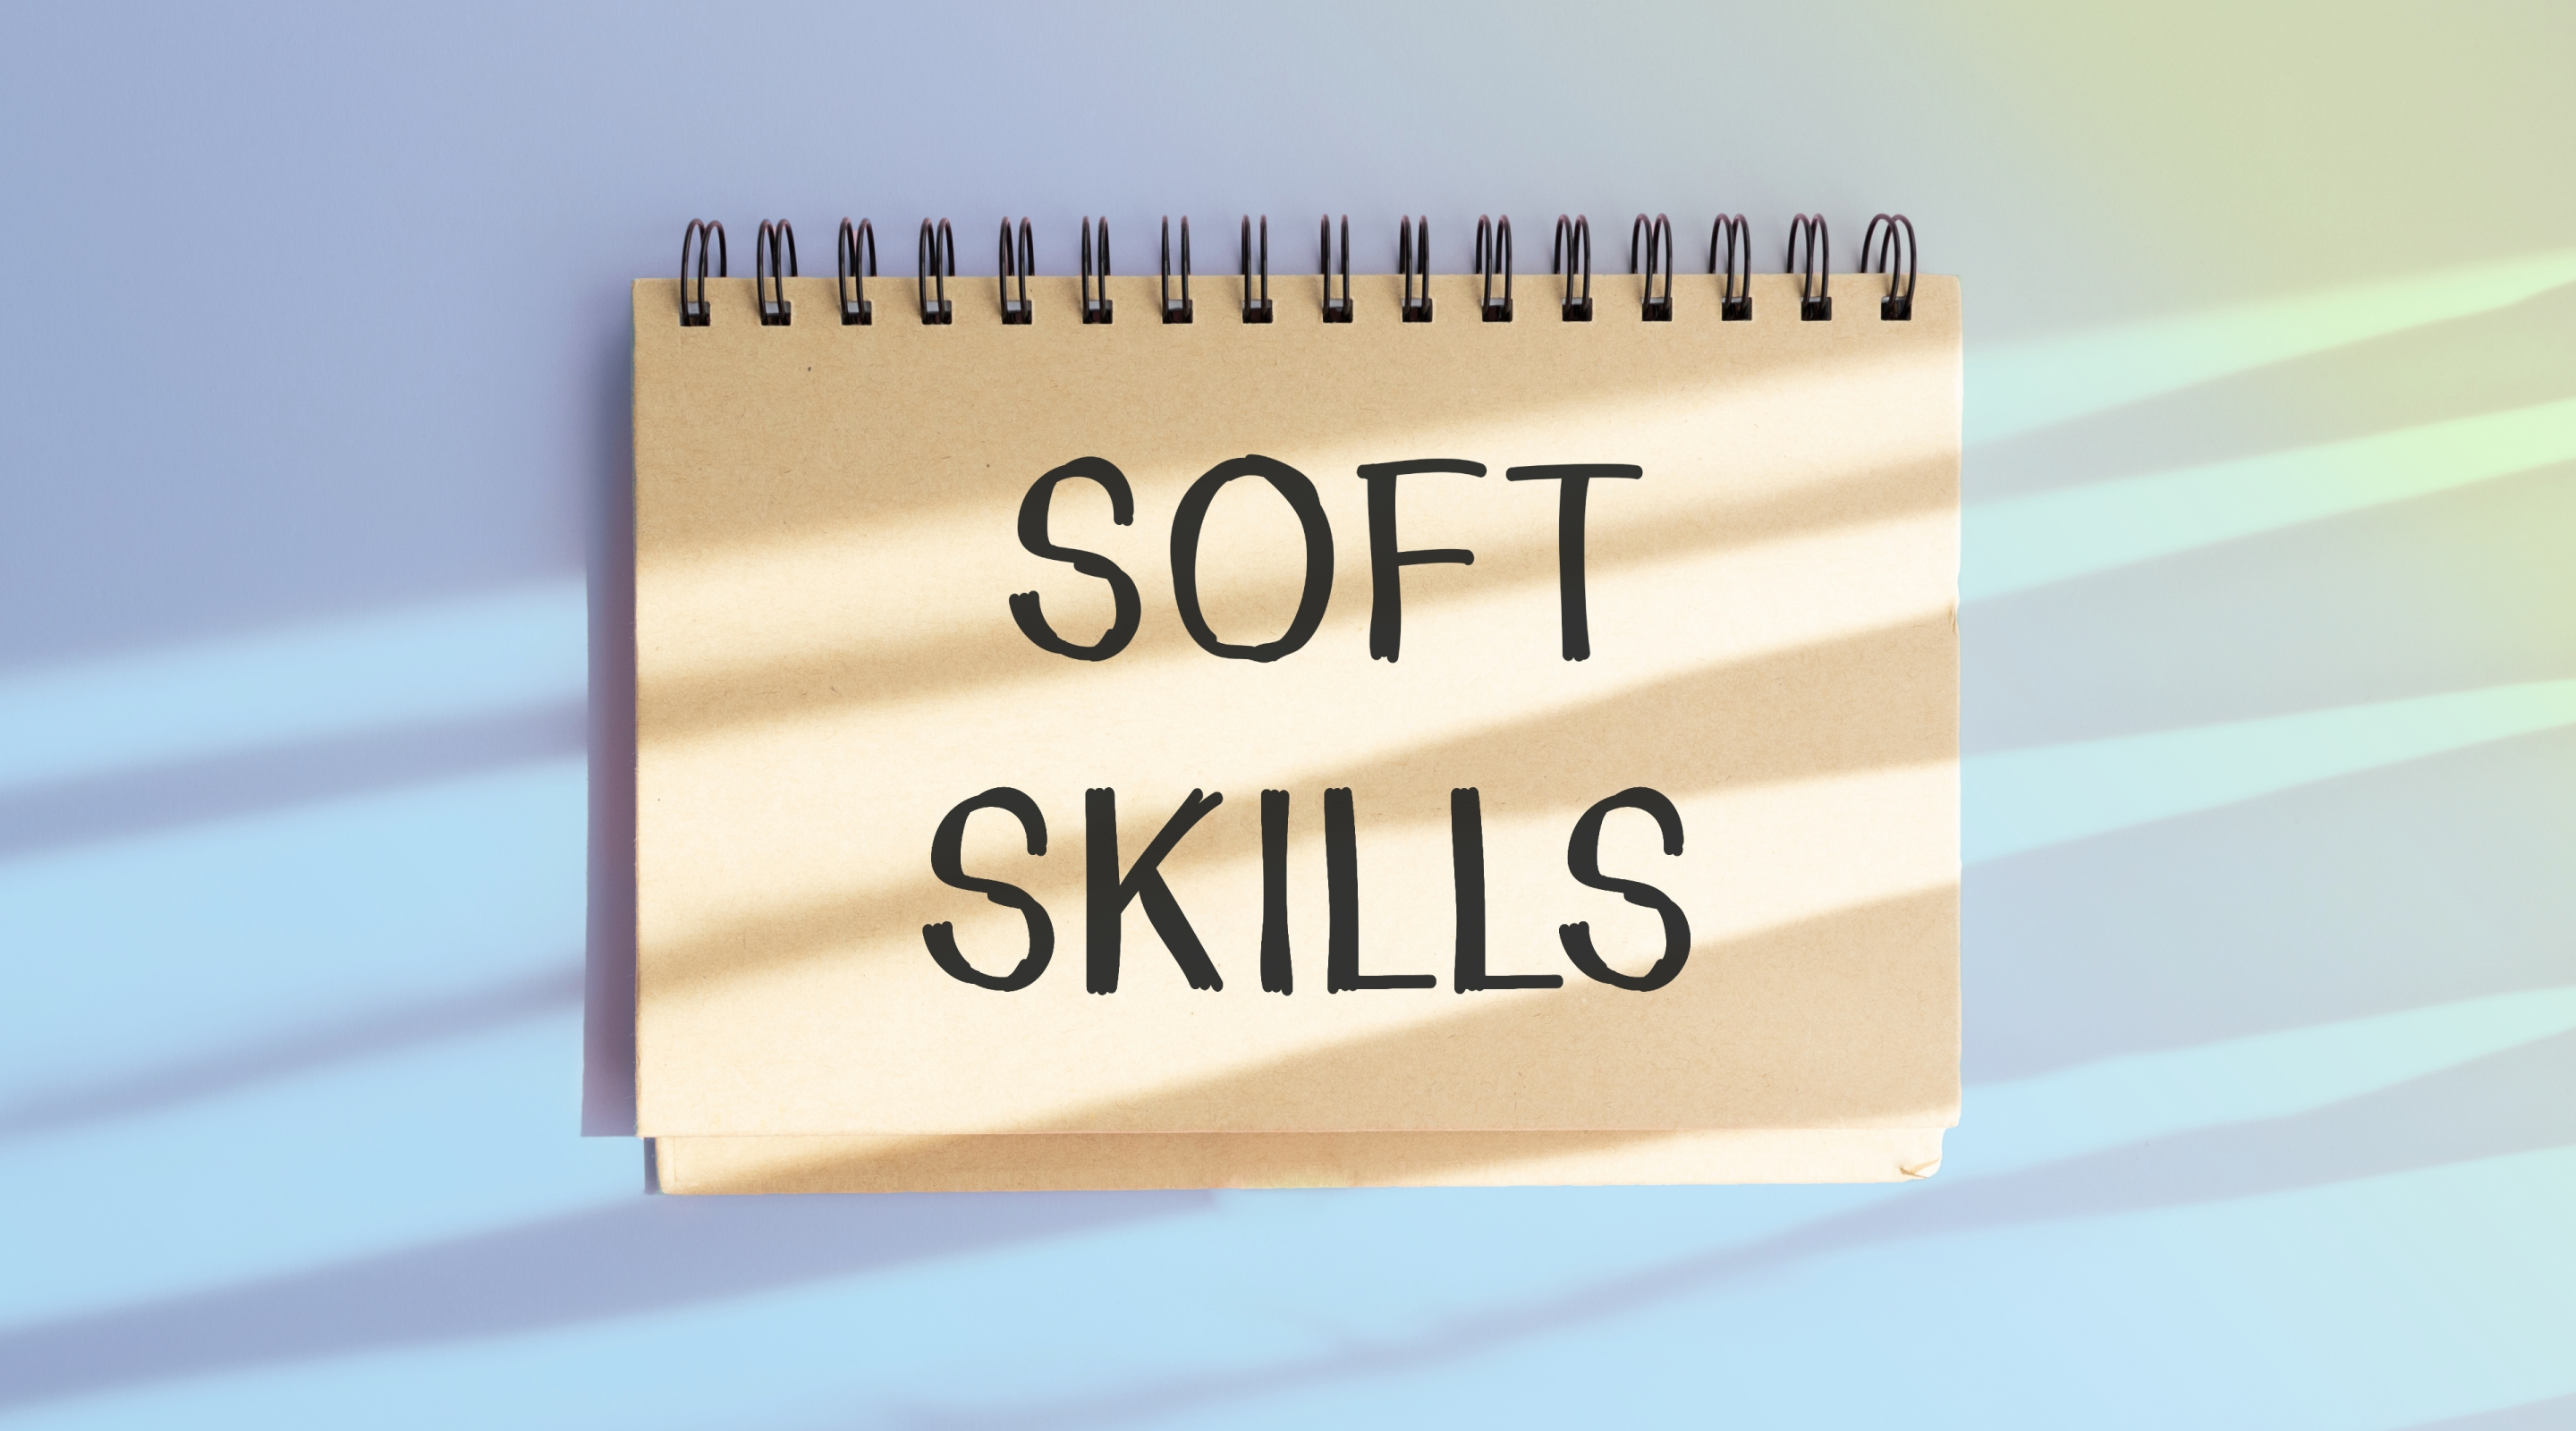 Як влаштуватися на роботу? Прокачати soft skills!